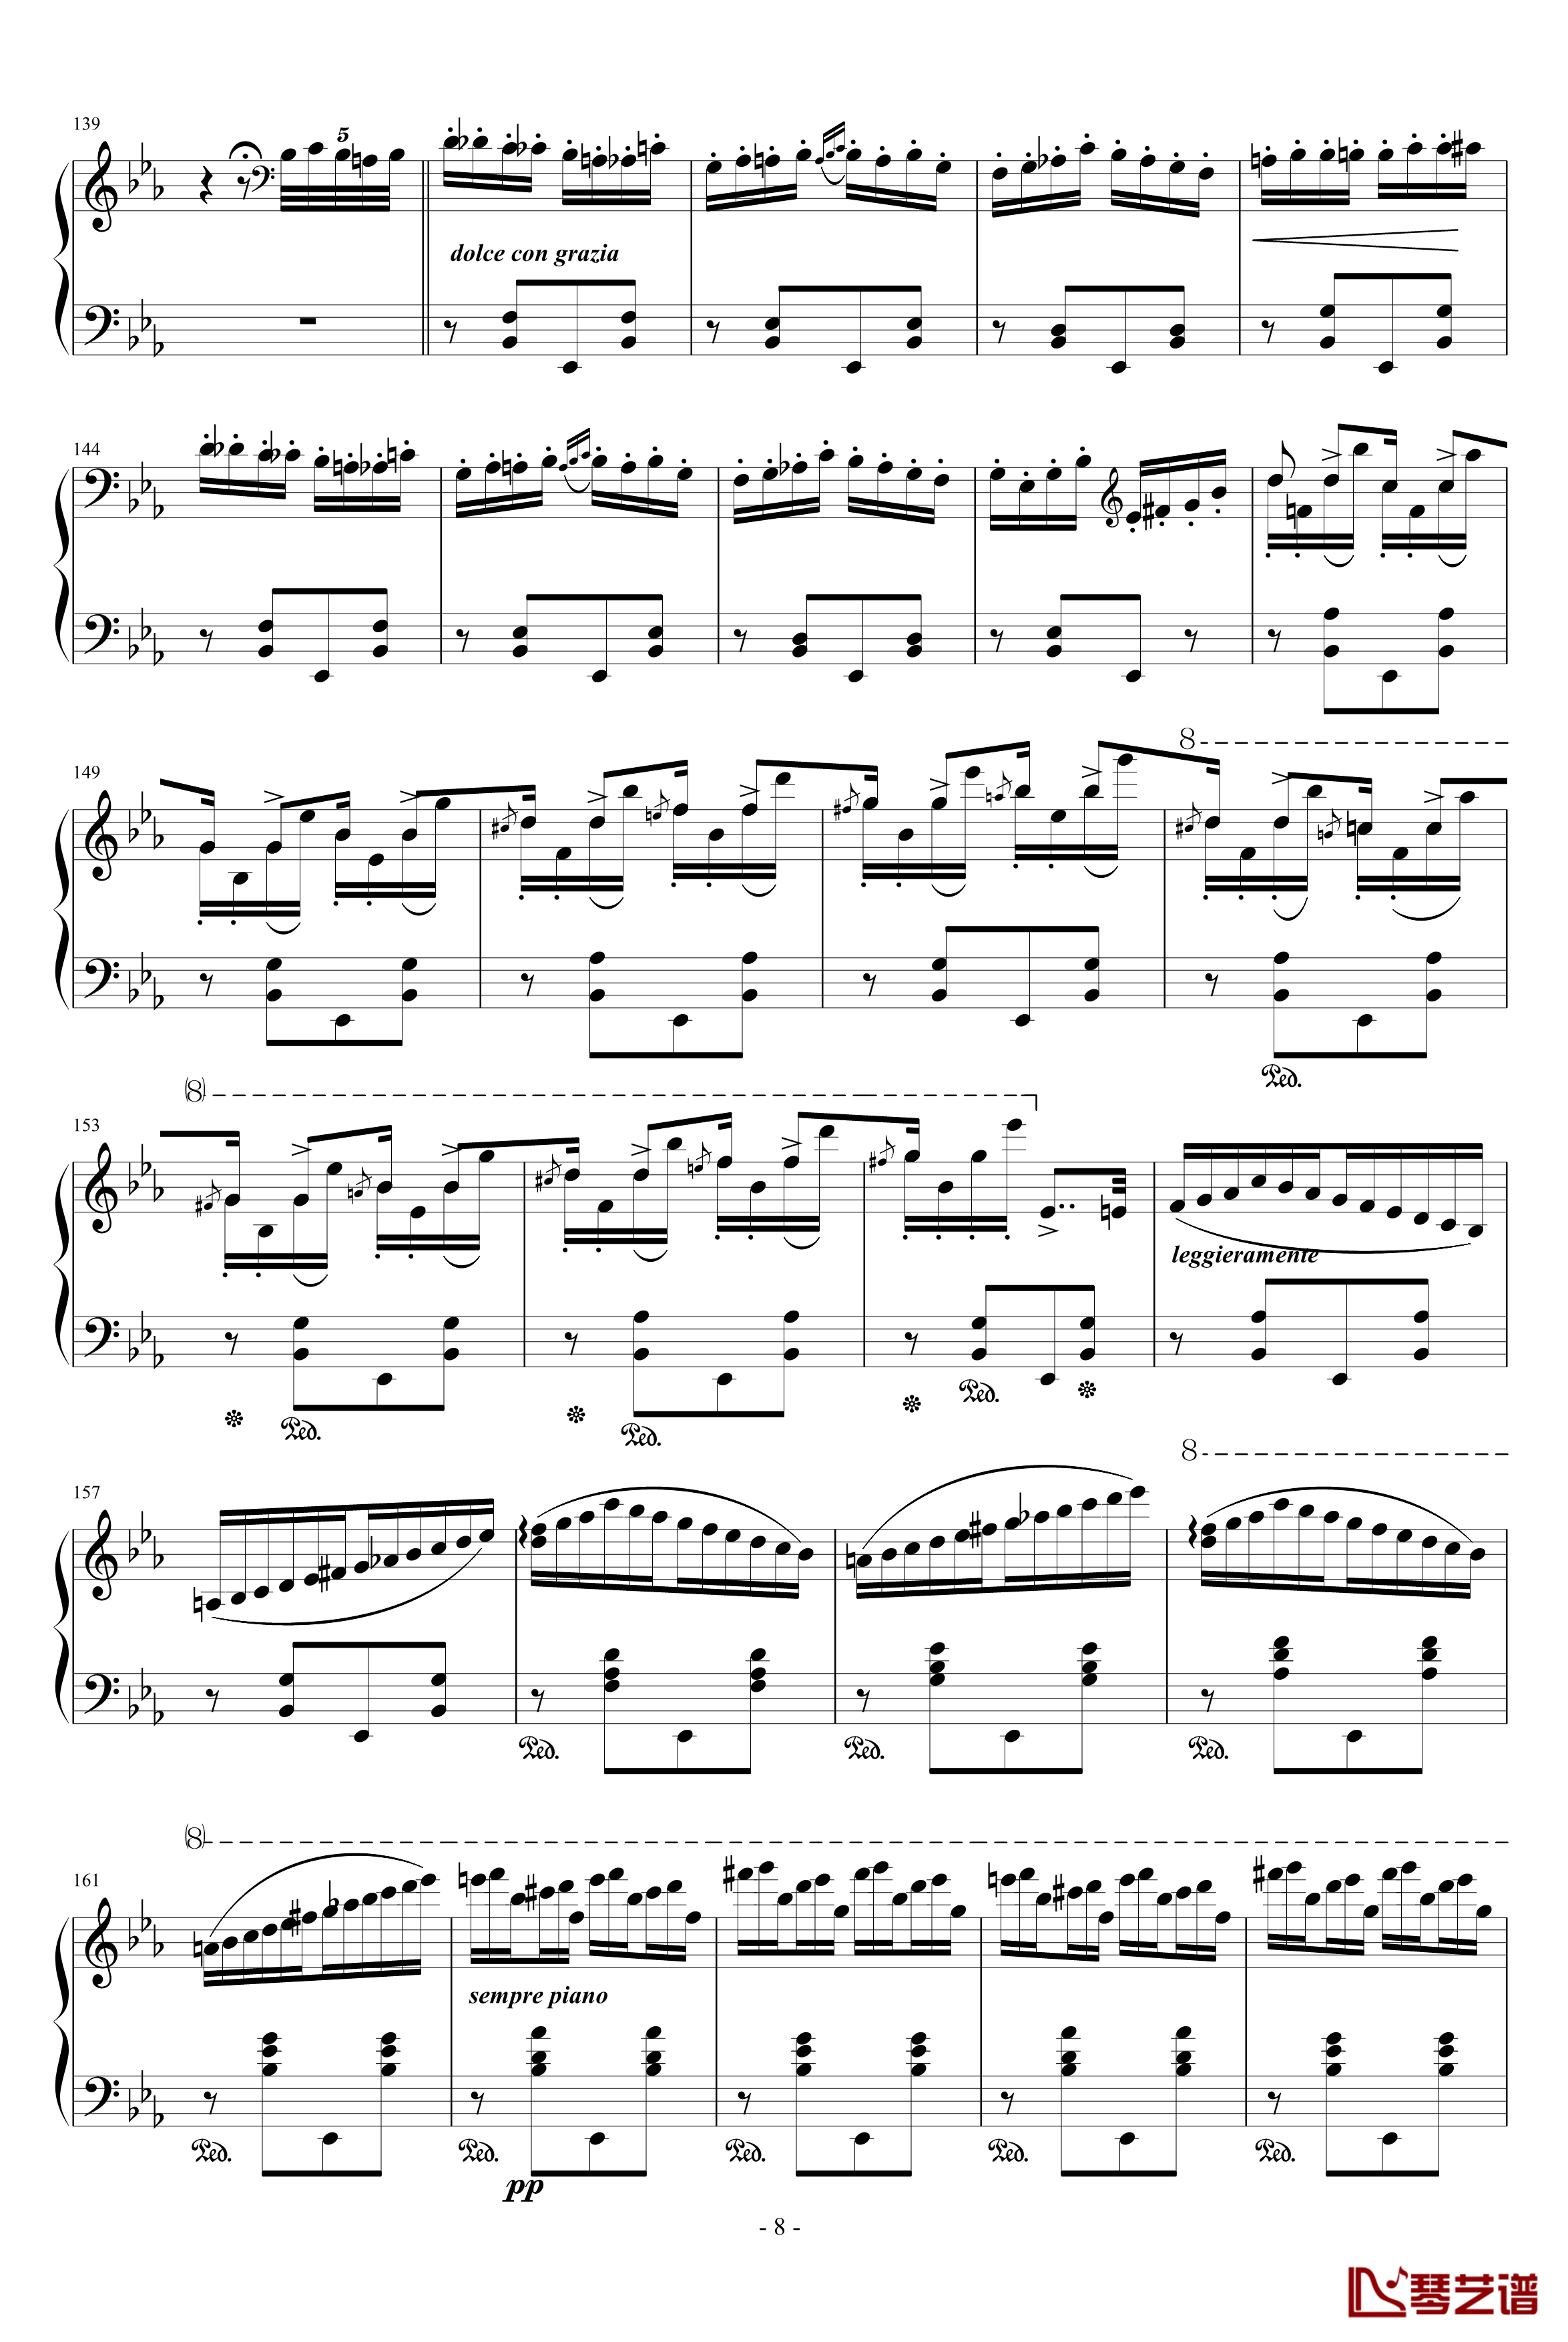 匈牙利狂想曲第9号钢琴谱-19首匈狂里篇幅最浩大、技巧最艰深的作品之一-李斯特8